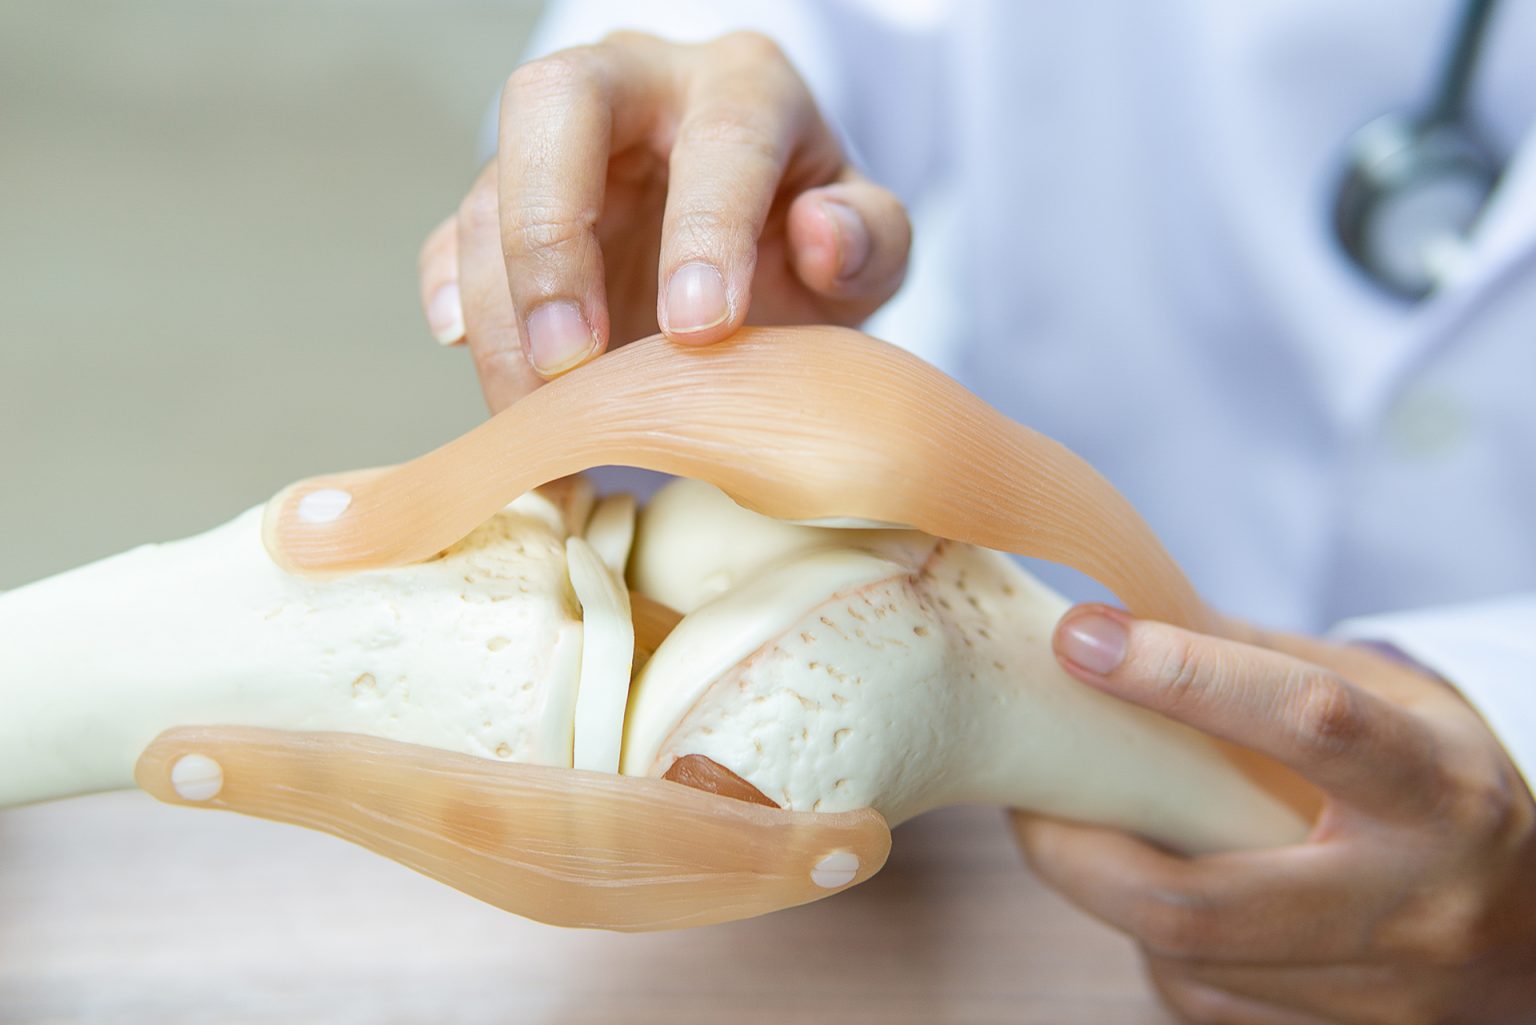 اتعرف أكثر على عملية ترقيع عظام الساق وما هي أنواع الطعوم العظمية المختلفة؟